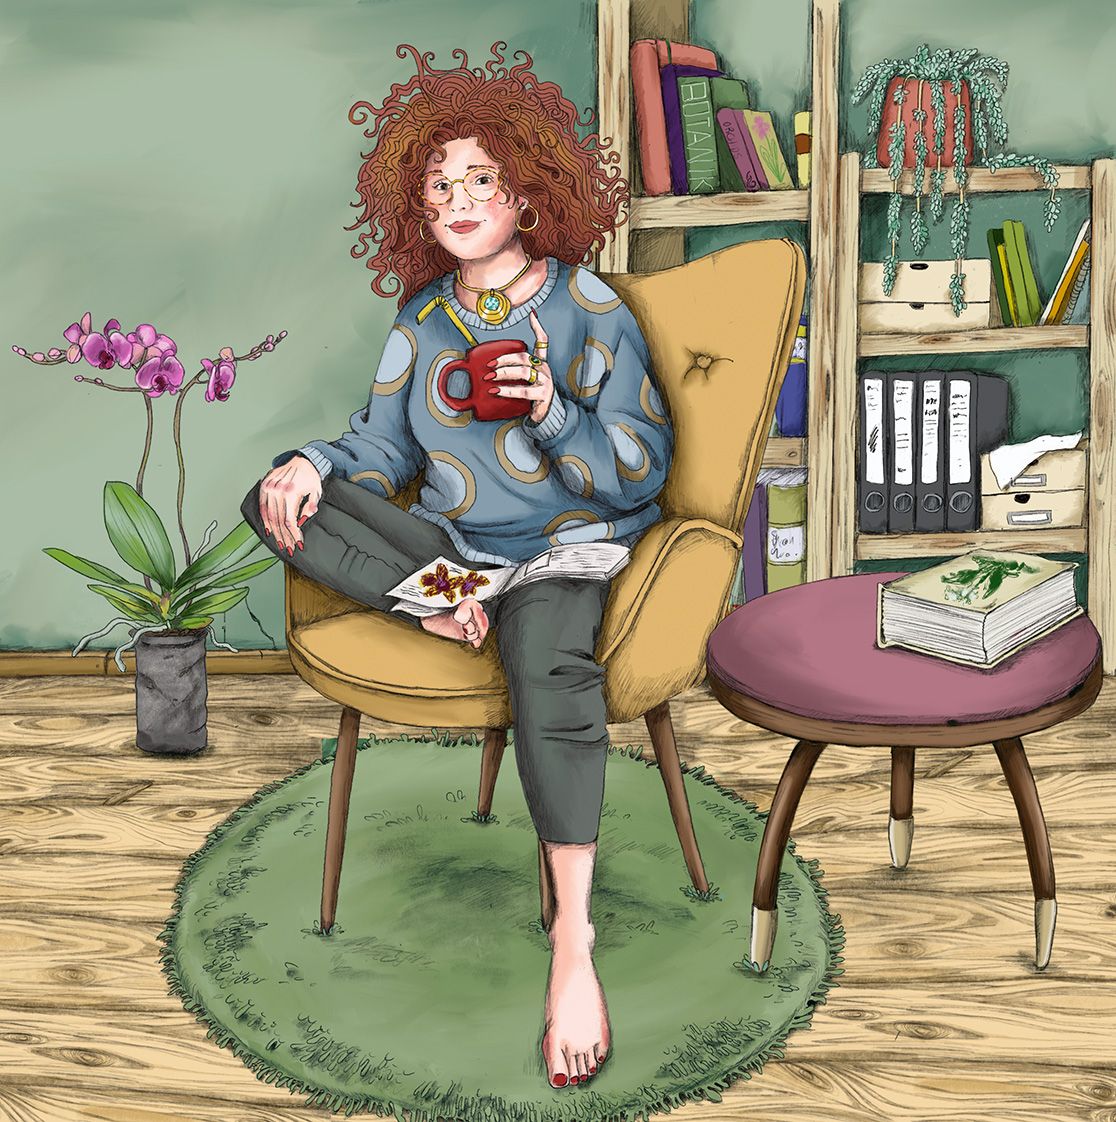 Rothaarige Frau sitzt mit einer Kaffeetasse auf einem Sessel in einem Zimmer. Auf ihrem Schoß liegt ein Buch. Links neben ihr steht eine Orchidee